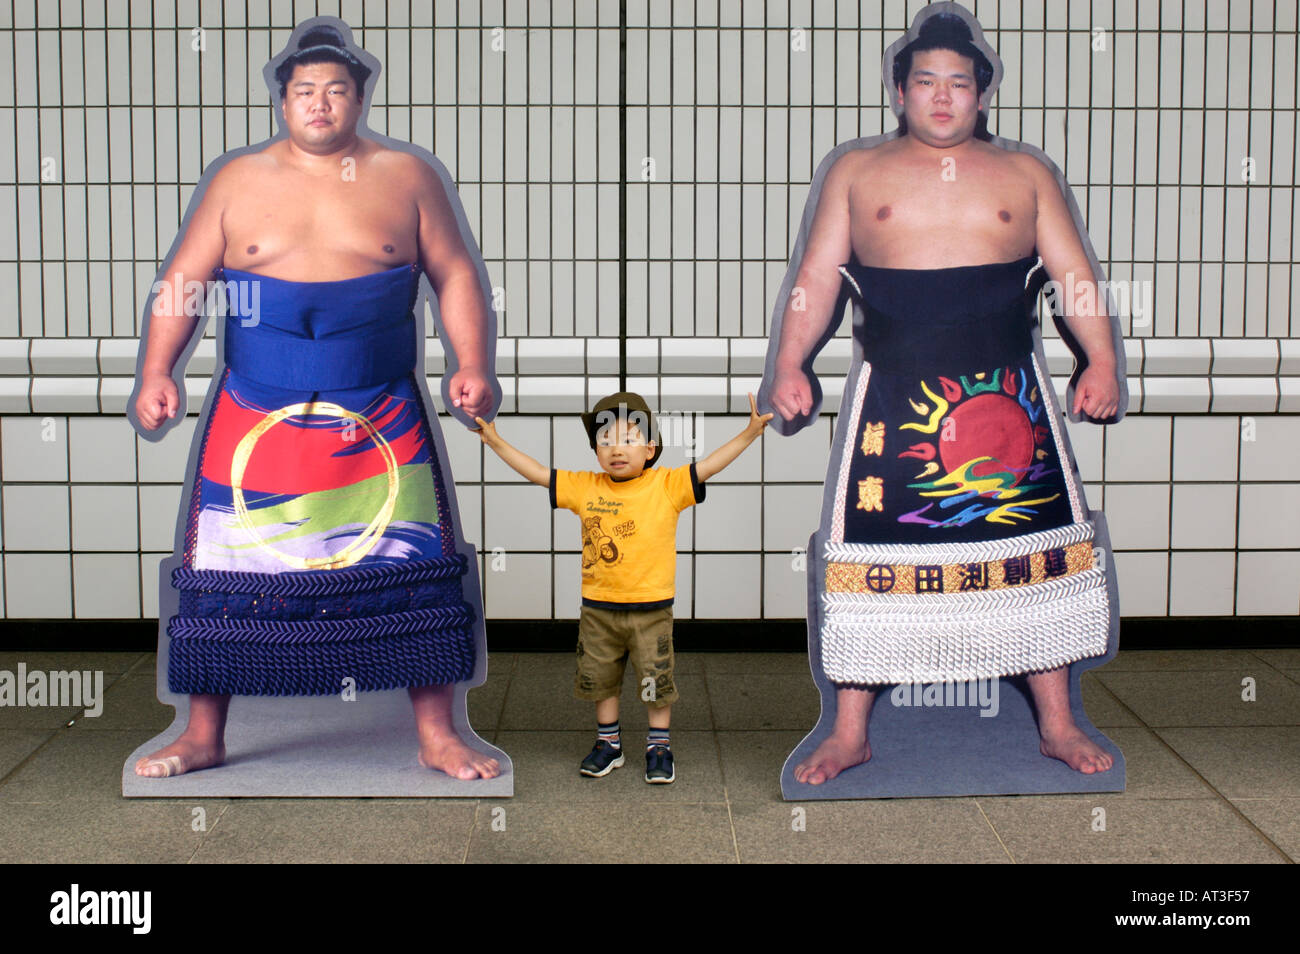 Nino japones de sumo fotografías imágenes alta resolución - Alamy